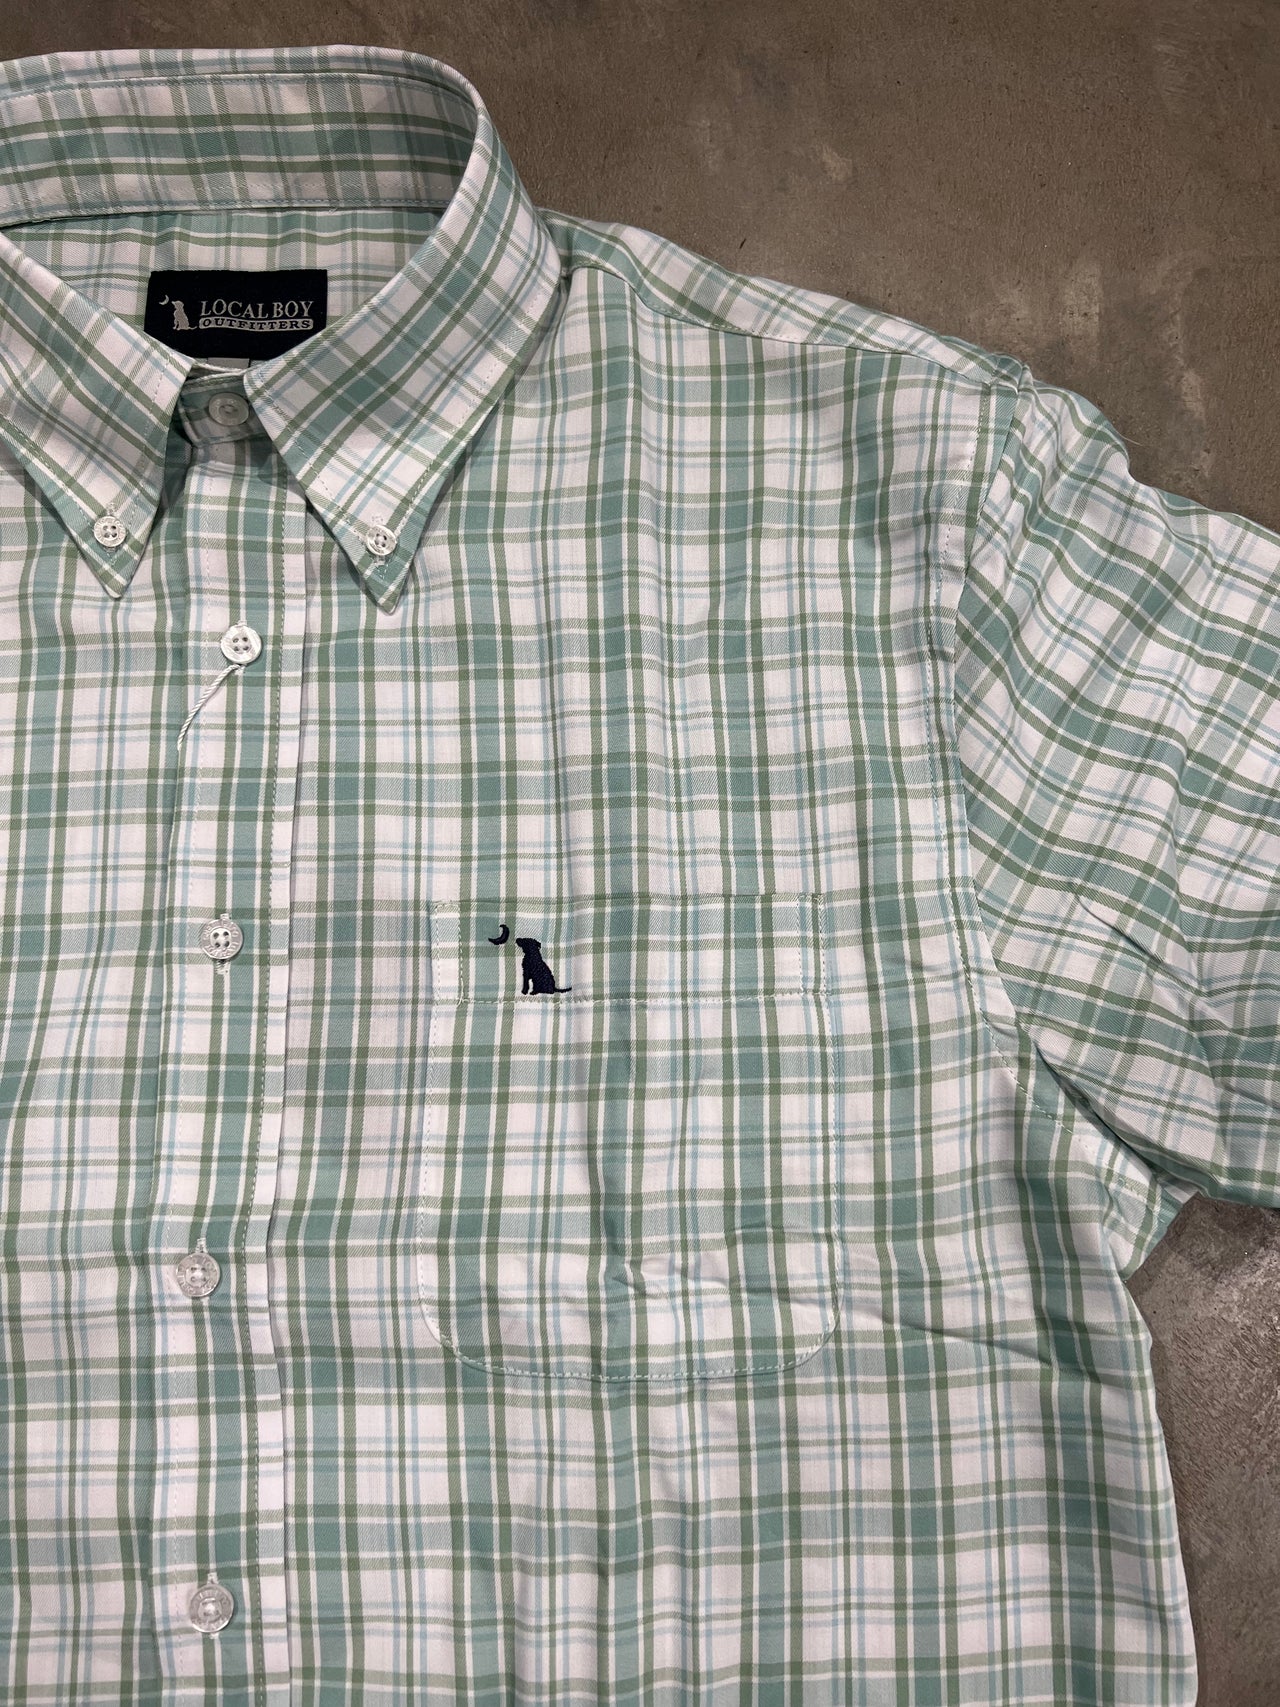 Hutto Dress Button Down Shirt - Teal/Green/Light Blue